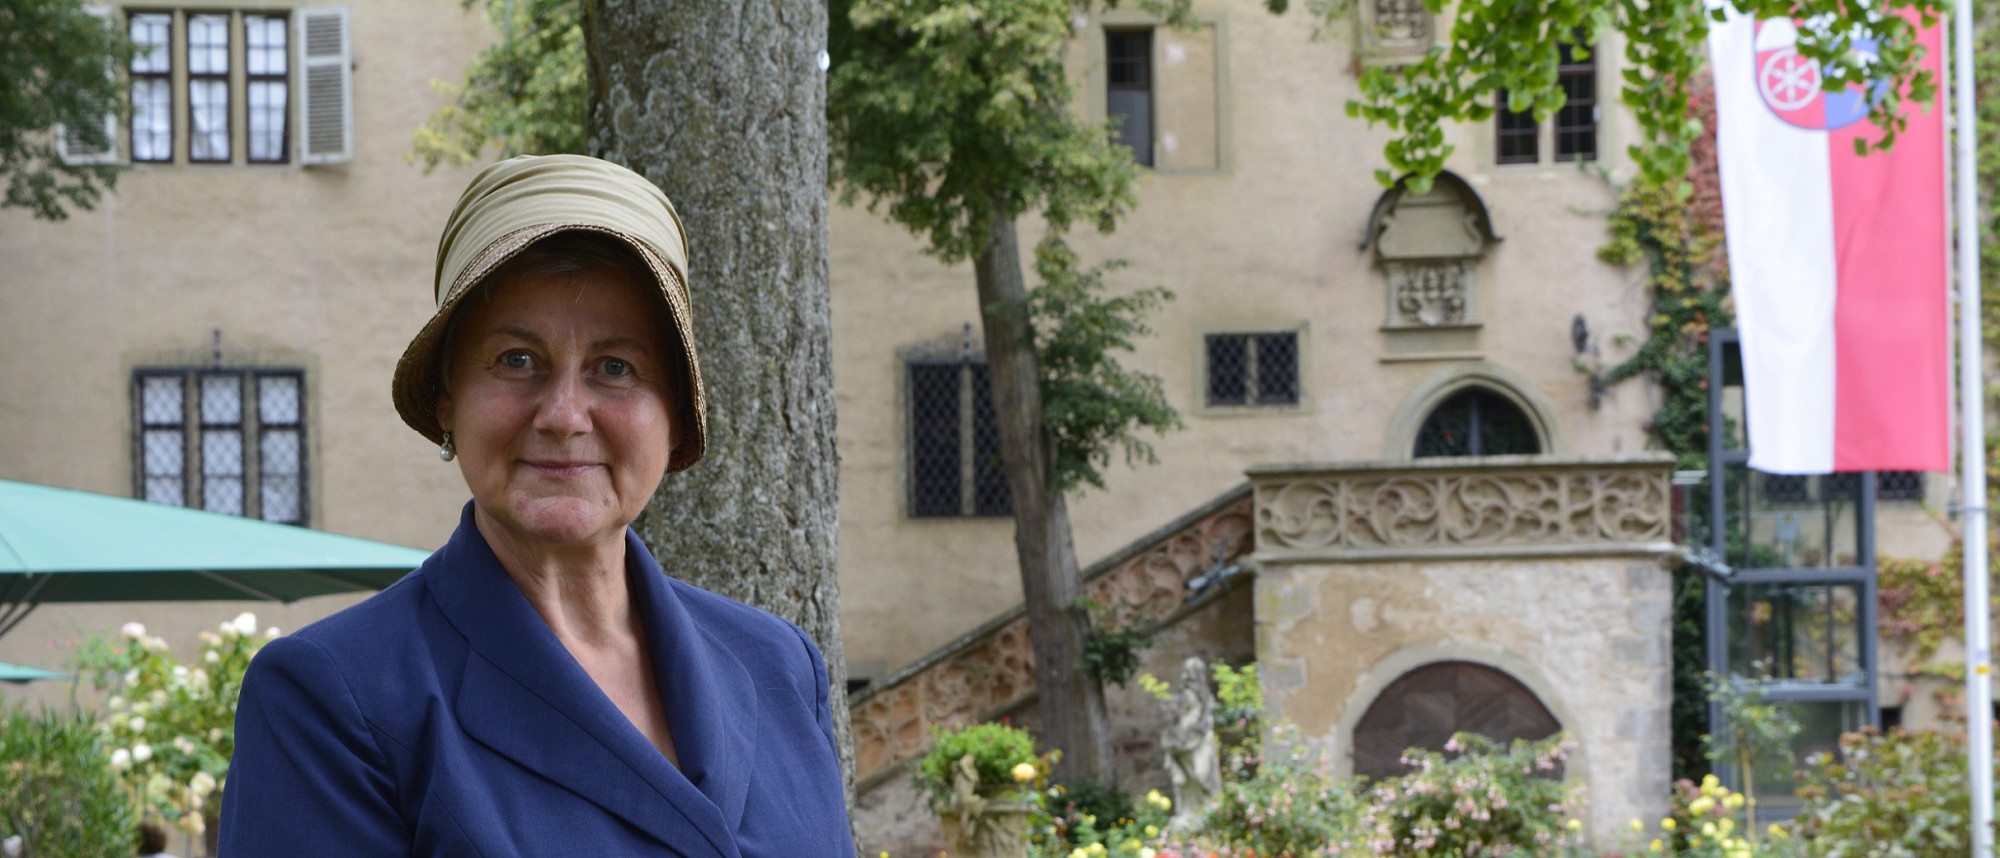 Eine Museumspädagogin hat sich als Gräfin Carola verkleidet. Im Hintergrund befindet sich das Schloss.